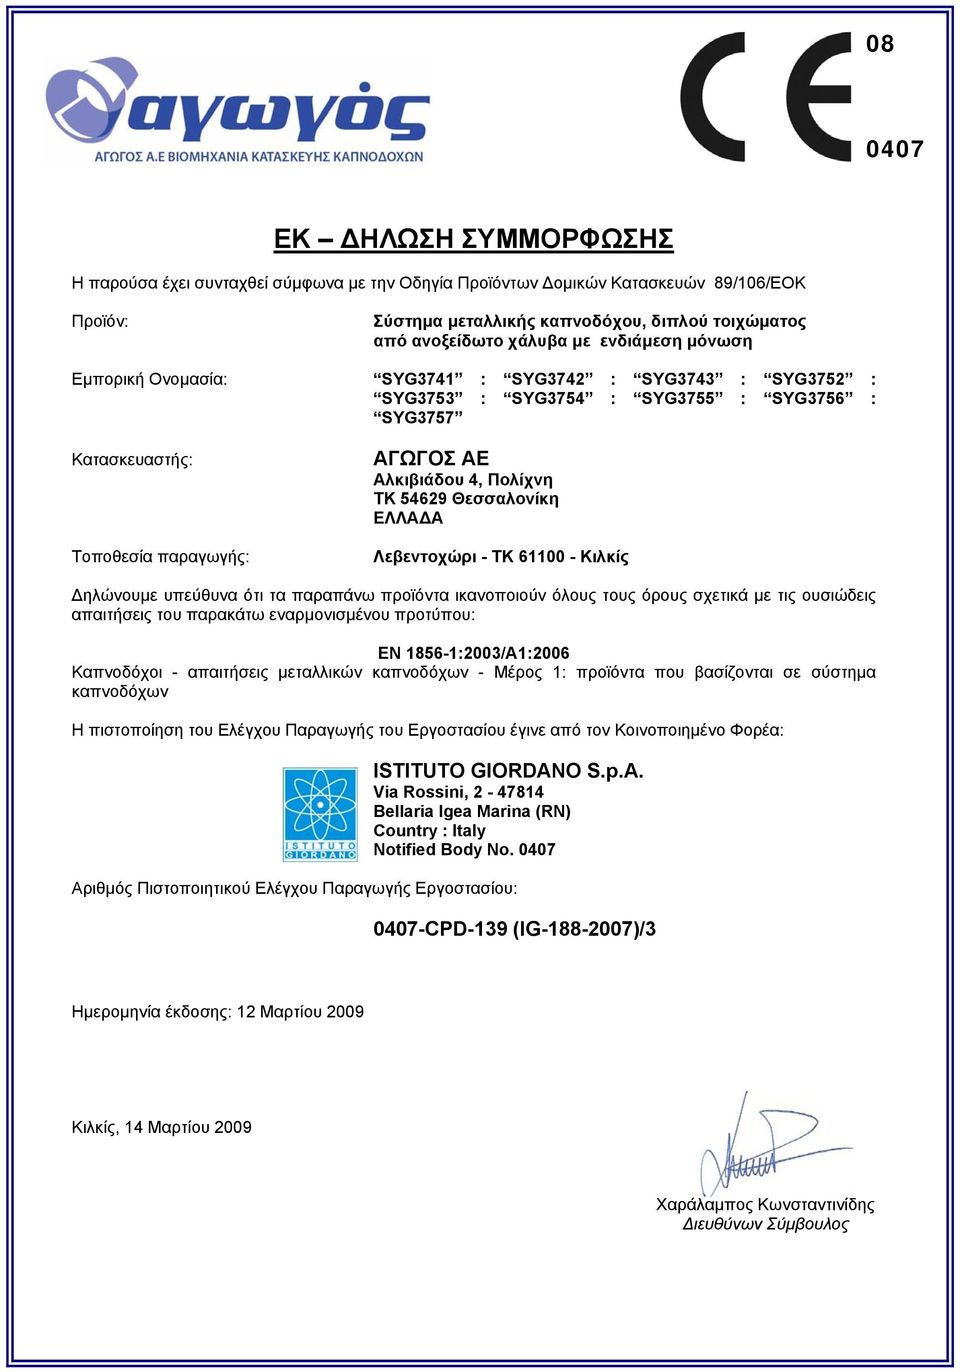 54629 Θεσσαλονίκη ΕΛΛΑΔΑ Λεβεντοχώρι - ΤΚ 61100 - Κιλκίς Δηλώνουμε υπεύθυνα ότι τα παραπάνω προϊόντα ικανοποιούν όλους τους όρους σχετικά με τις ουσιώδεις απαιτήσεις του παρακάτω εναρμονισμένου